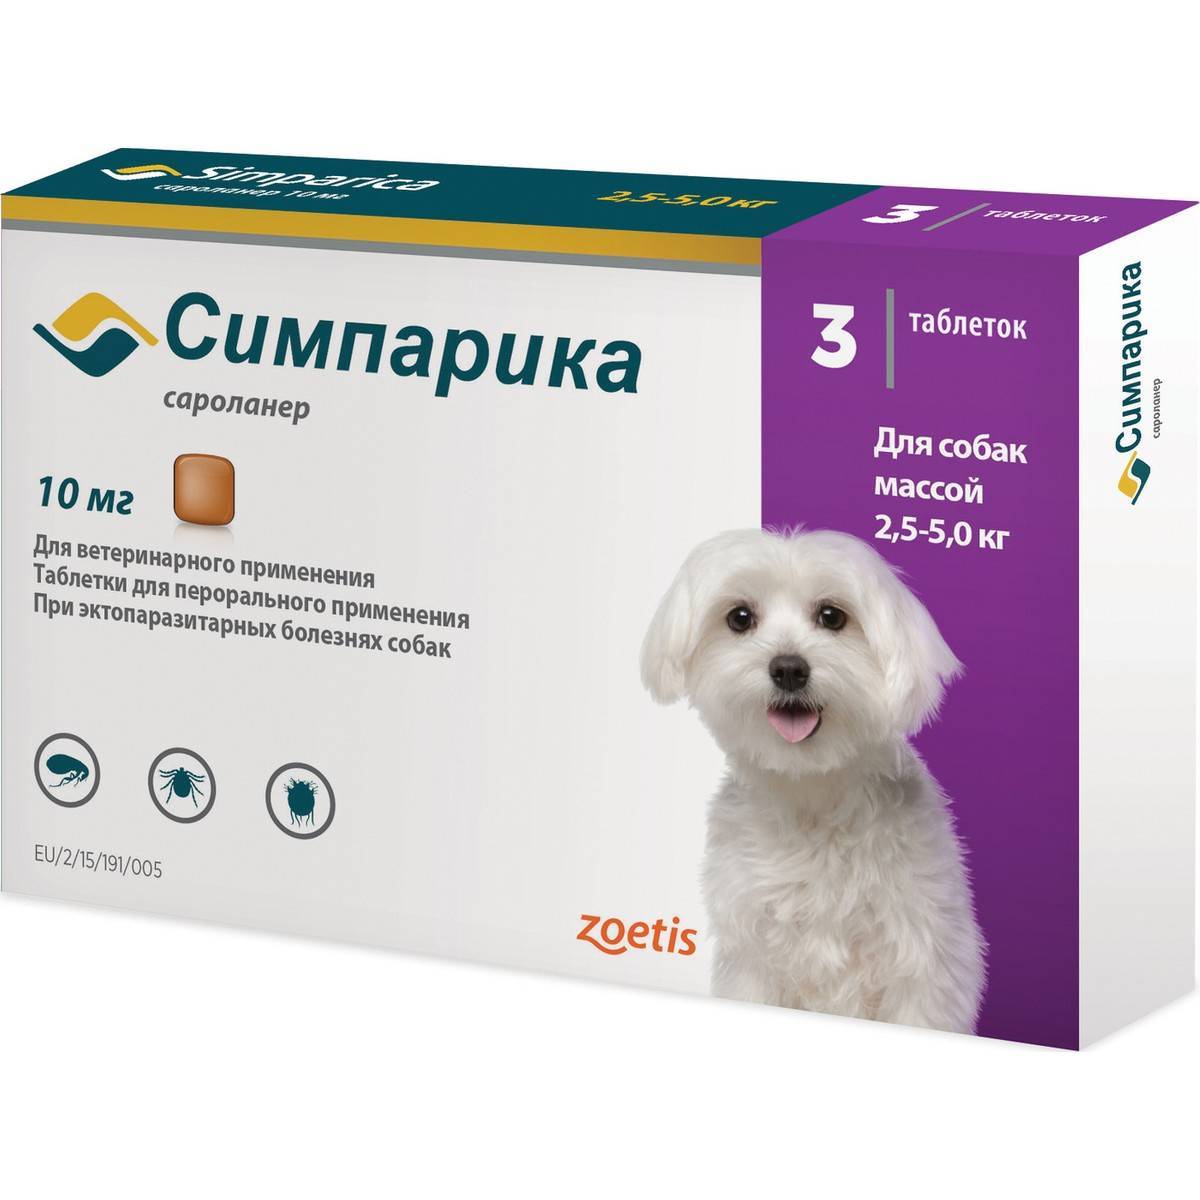 Симпарика (simparica) для собак и щенков – инструкция по применению жевательных таблеток от блох и клещей